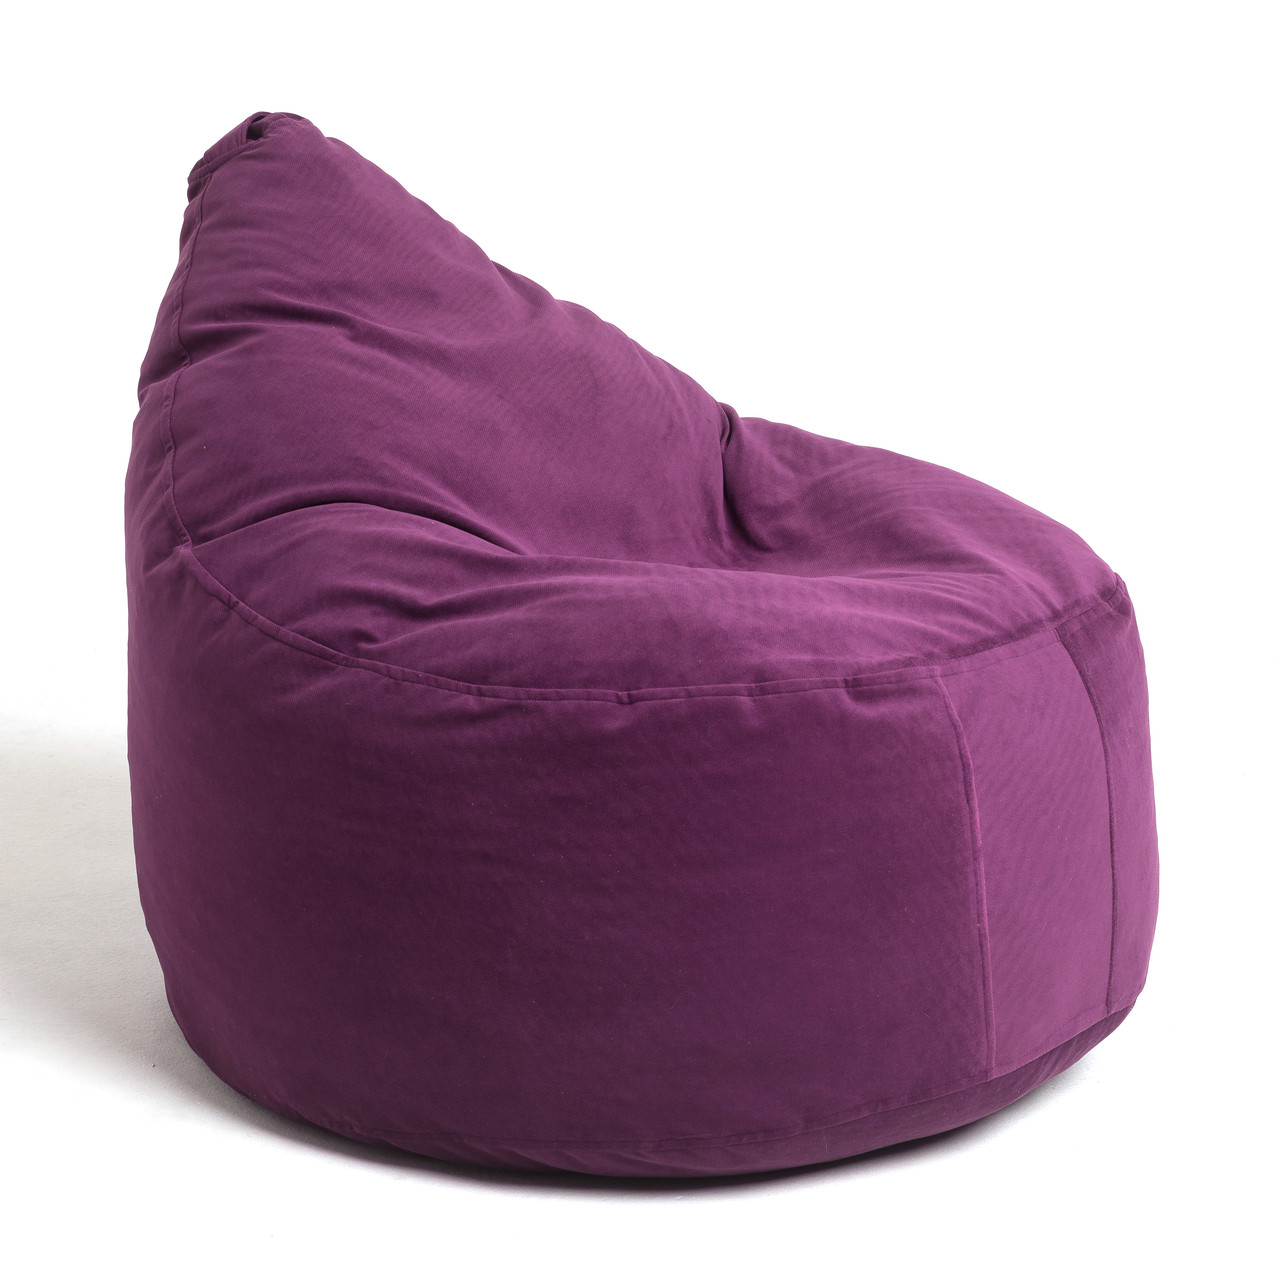 Кресло-мешок "Капля" Фиолетовая, XL, фото 1